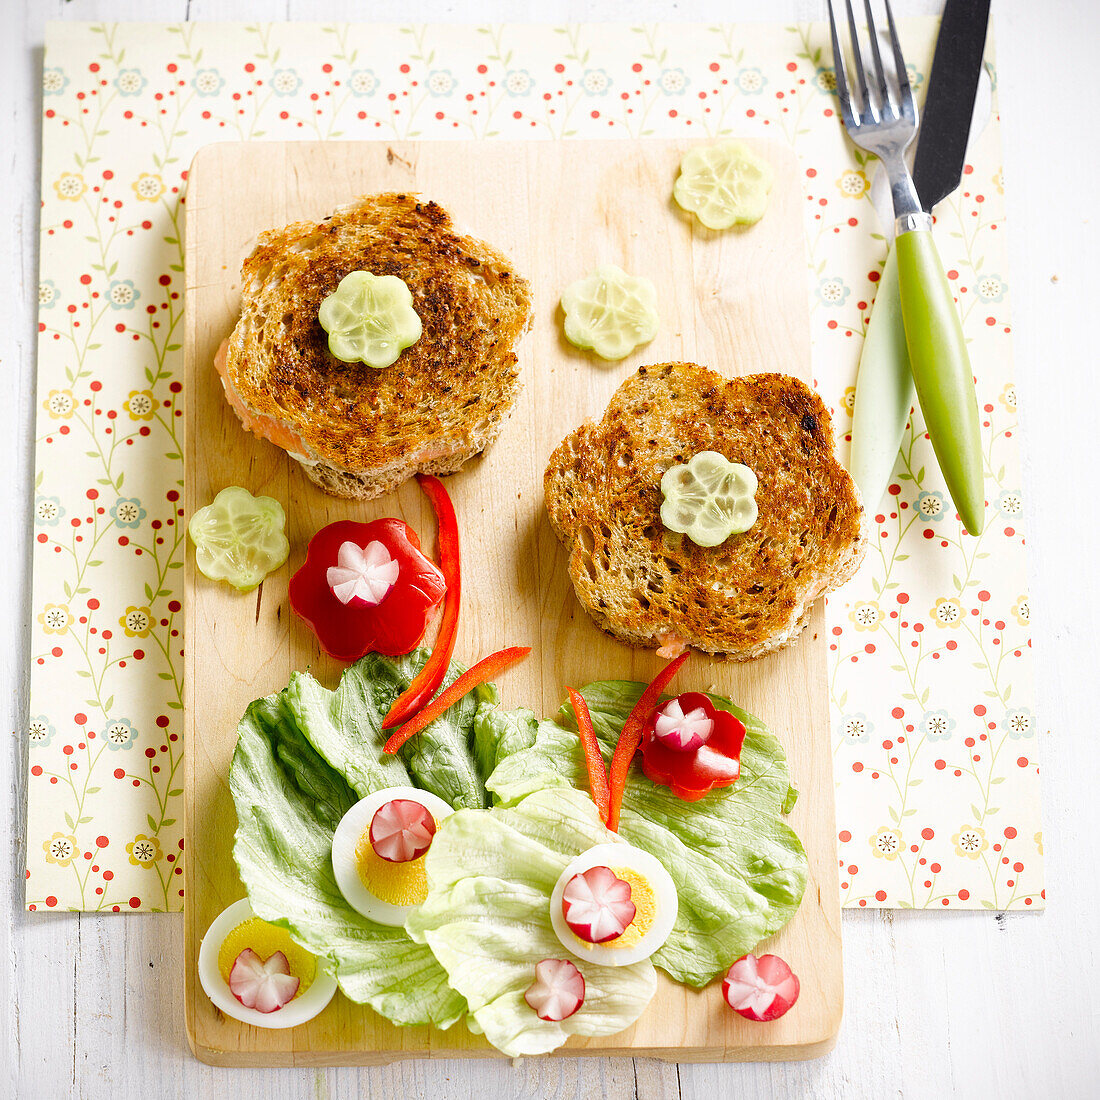 Croque-Monsieurs (Getoastetes Schinken-Käse-Sandwiche) mit Salatblättern in Blumenform angerichtet